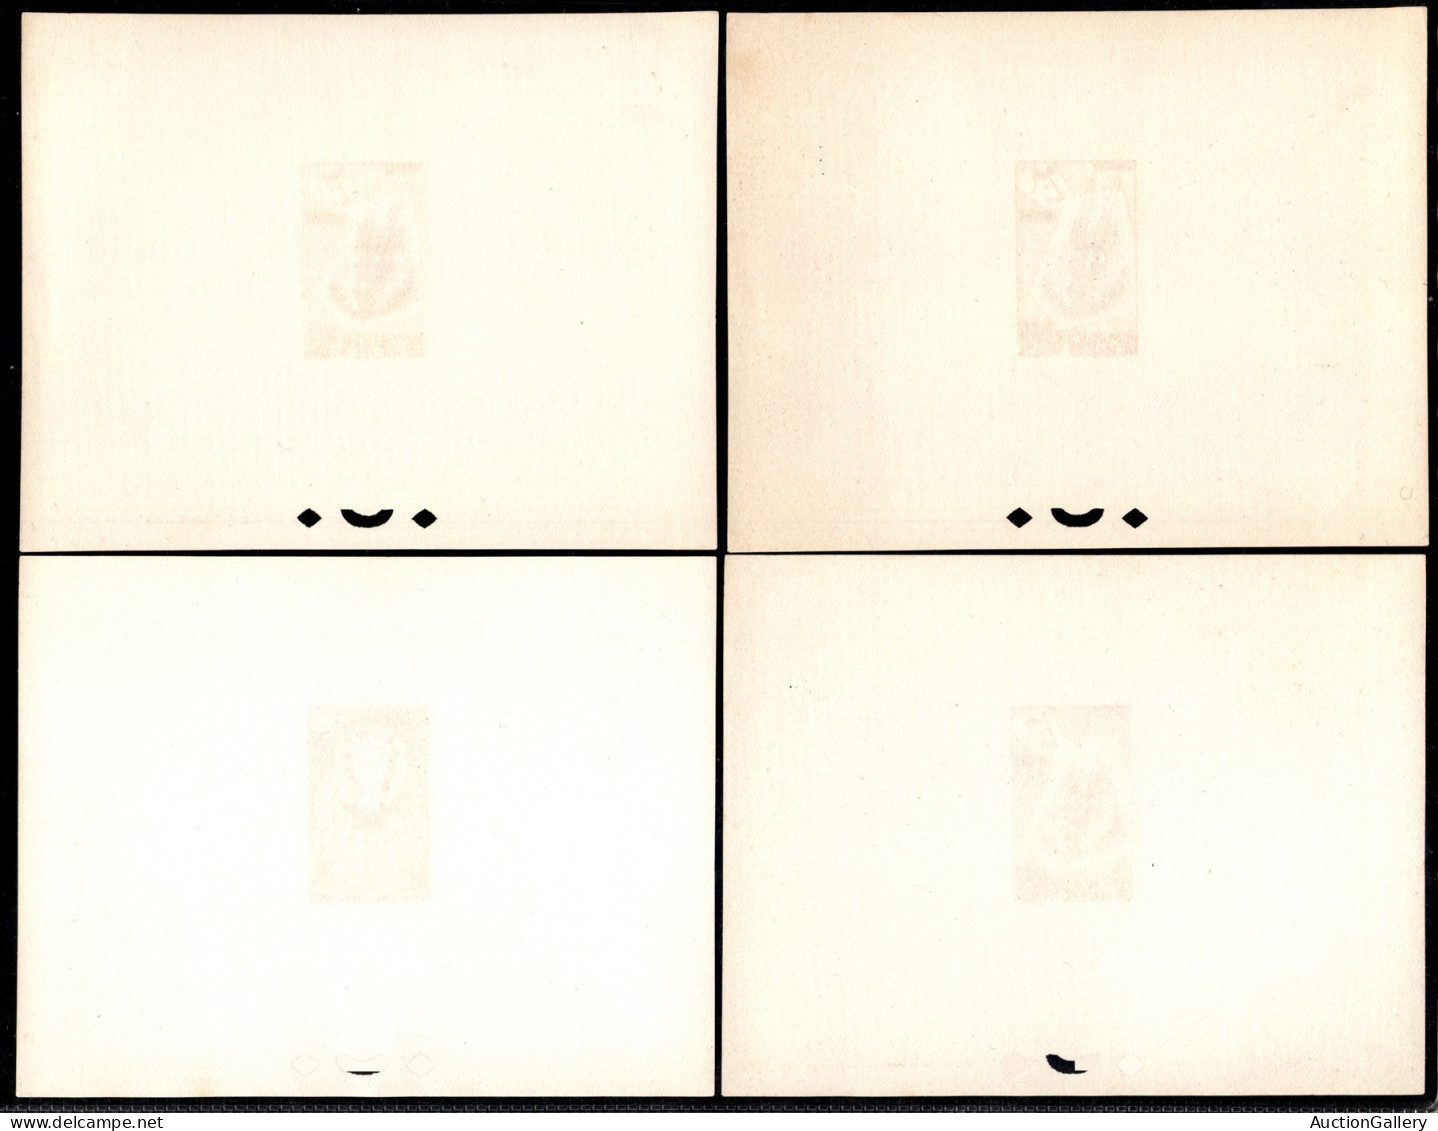 OLTREMARE - BURKINA FASO - 1960 - Haute Volta - Prove di lusso - Maschere tribali (71/88) - serie completa in foglietti 